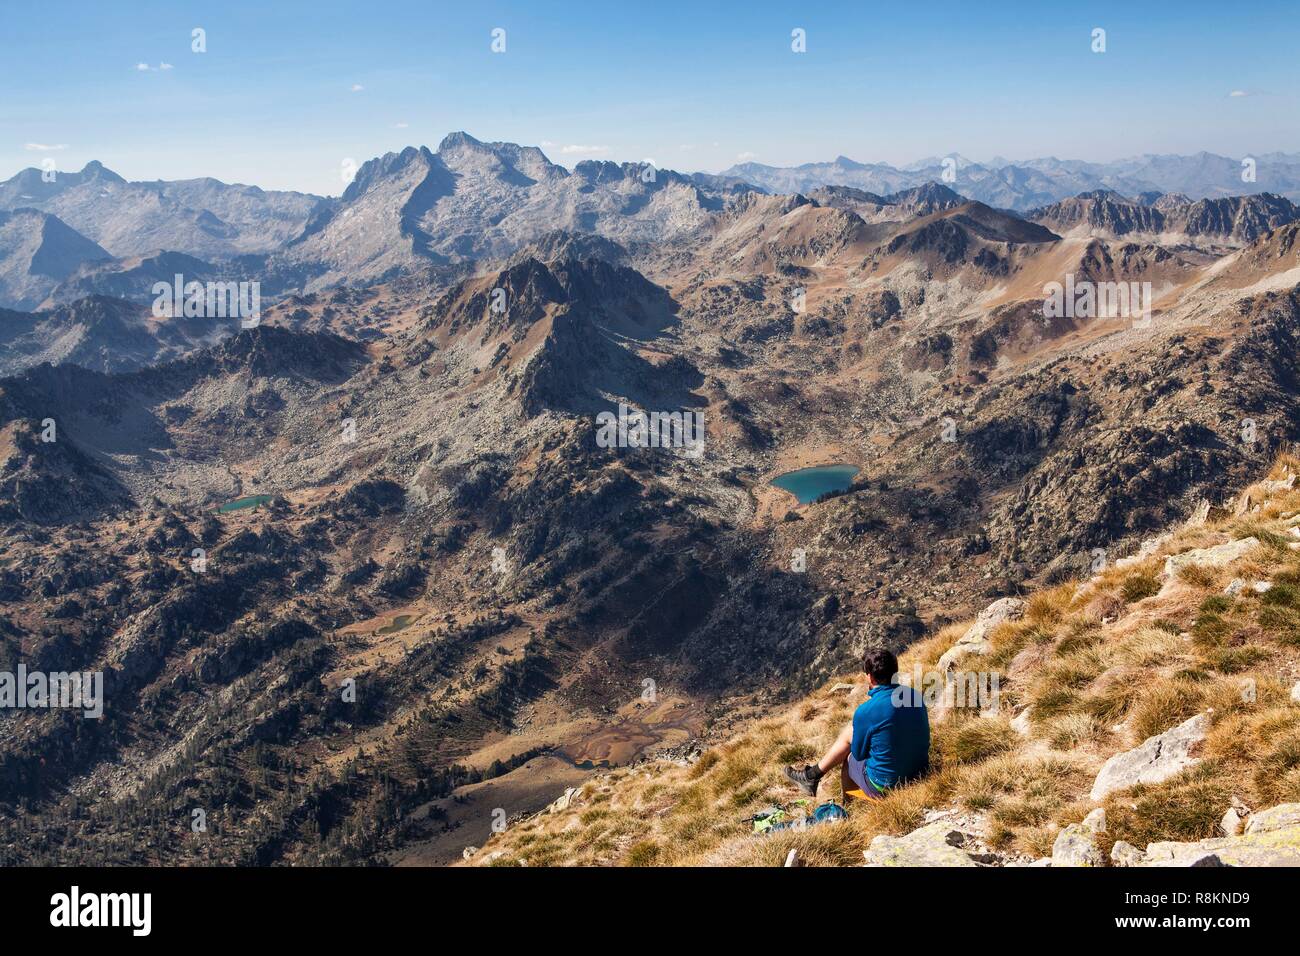 Francia, Hautes Pirenei, escursionista sulla sommità del picco Bastan (2715m) ammirando il panorama e il massiccio Neouvielle (3091m) Foto Stock